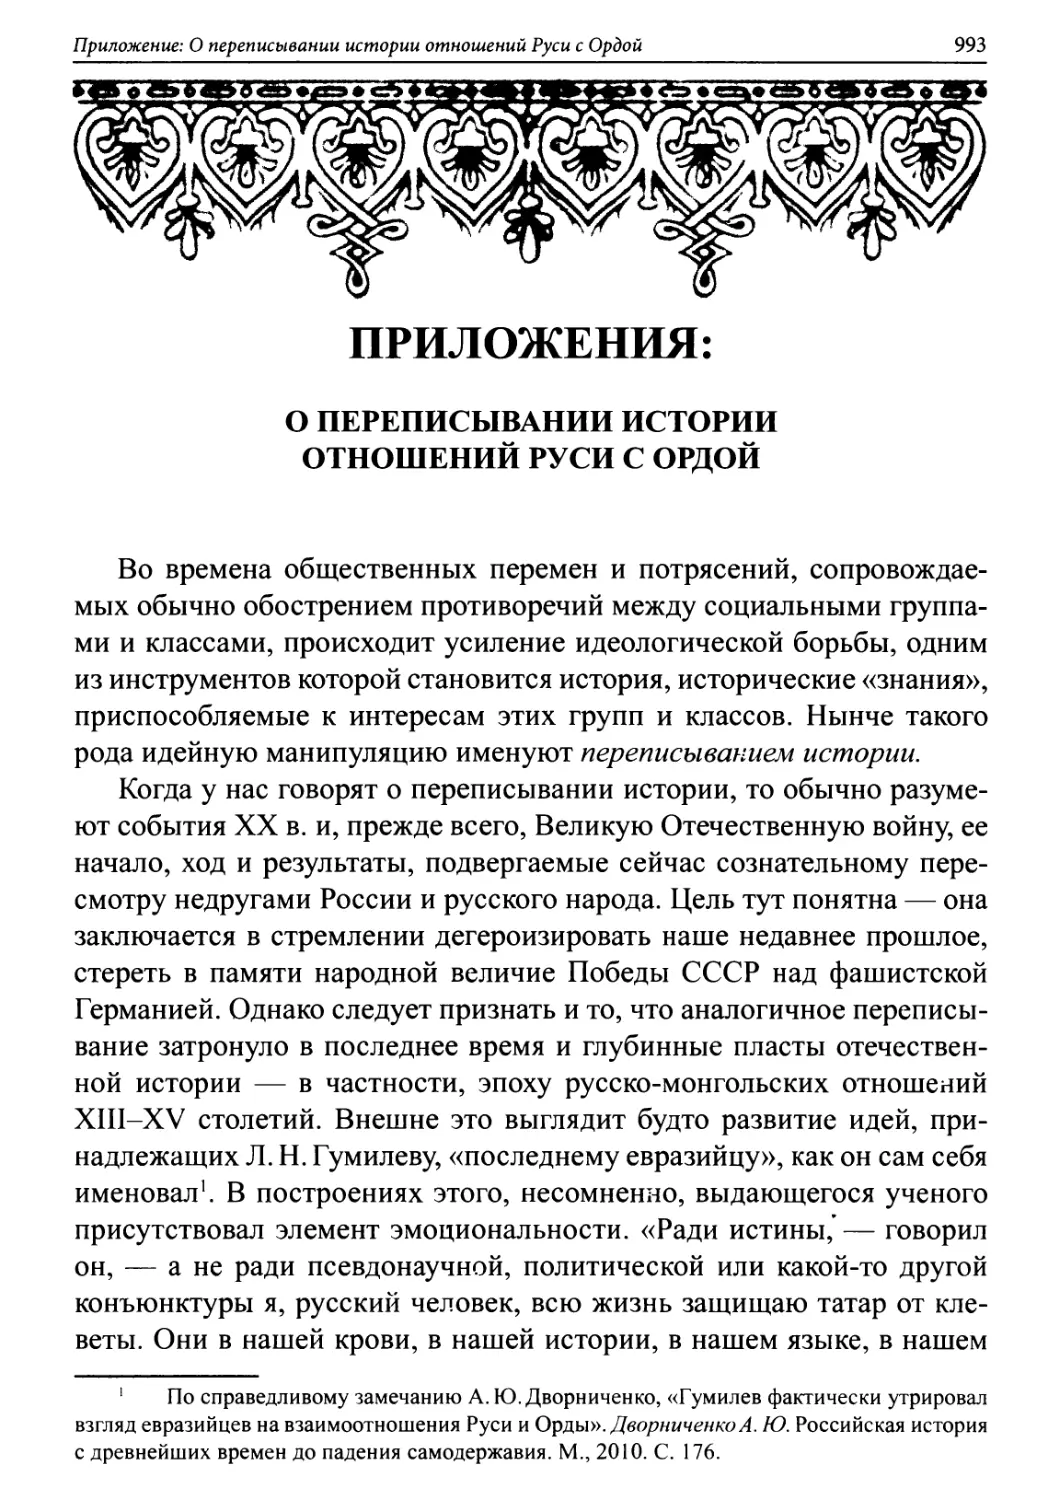 Приложения
1. О переписывании истории отношений Руси с Ордой